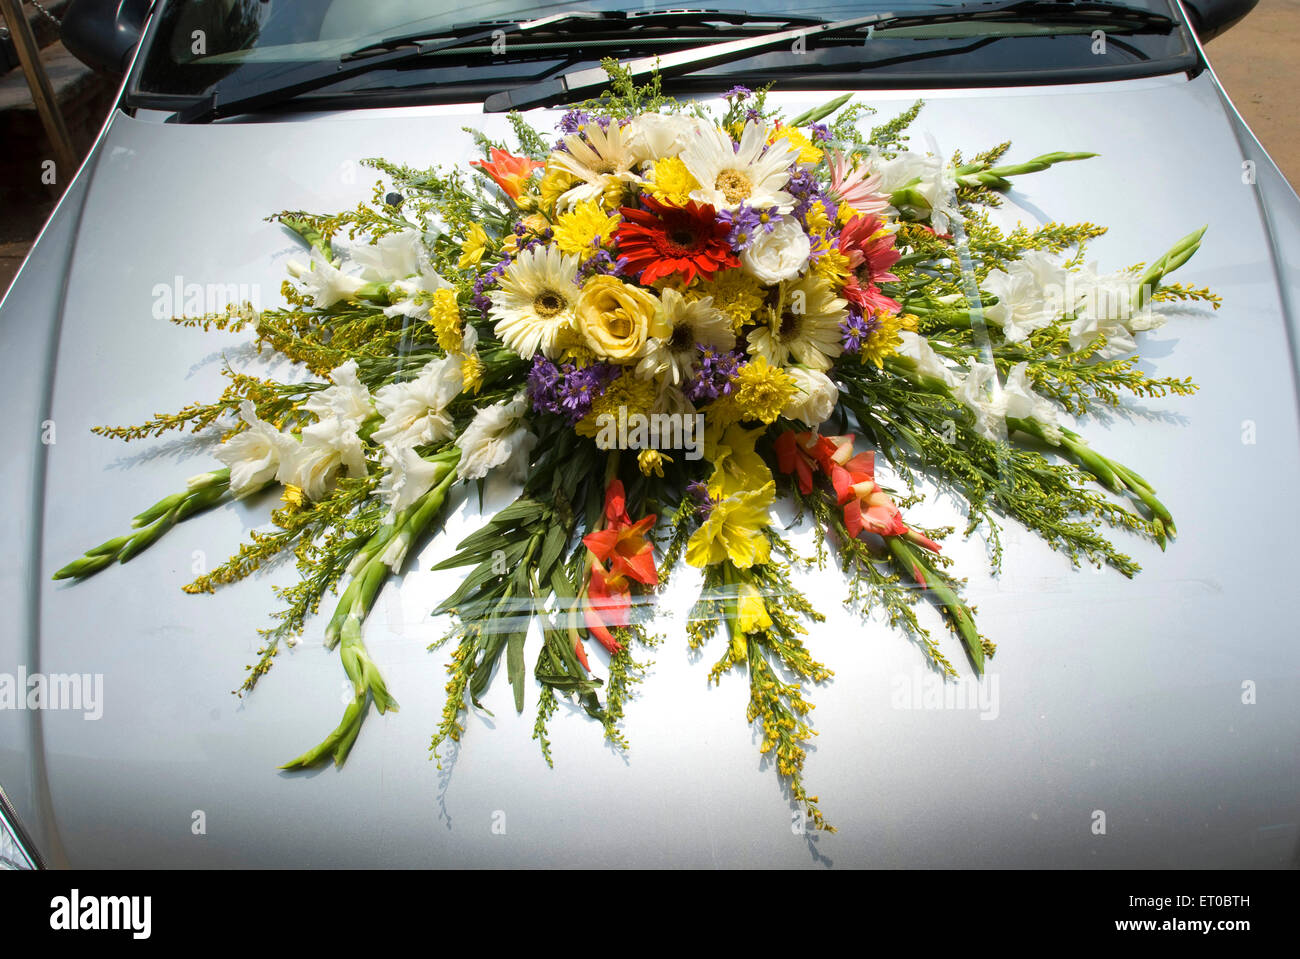 https://c8.alamy.com/compfr/et0bth/bouquet-de-fleurs-de-mariage-sur-la-decoration-de-capot-de-voiture-pour-la-procession-de-mariage-kerala-inde-asie-et0bth.jpg